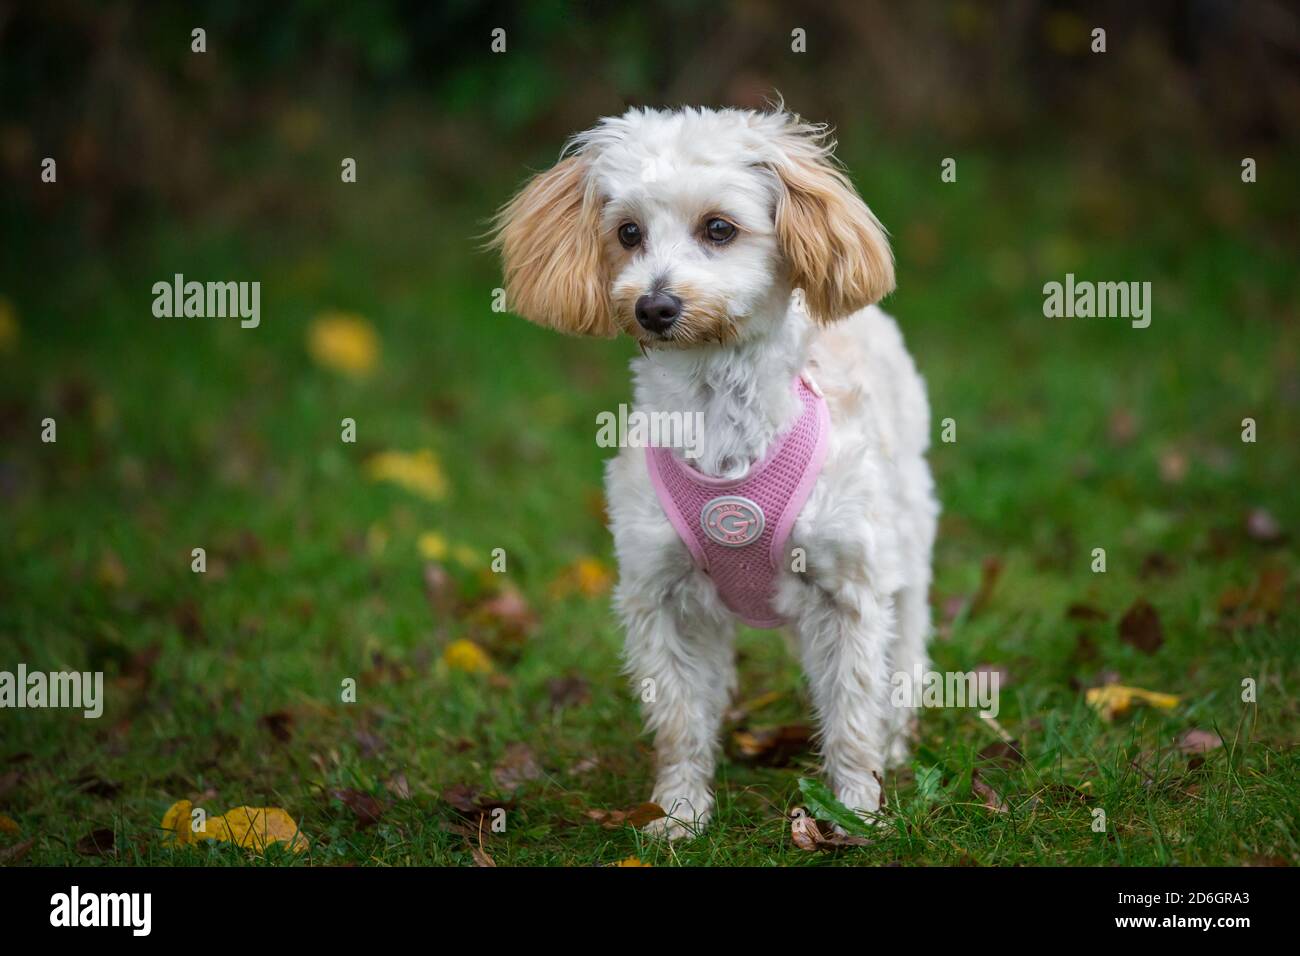 Maltipoo cucciolo, una razza di cane designer di Poodle x cane maltese, che indossa un imbragatura di cane rosa Foto Stock